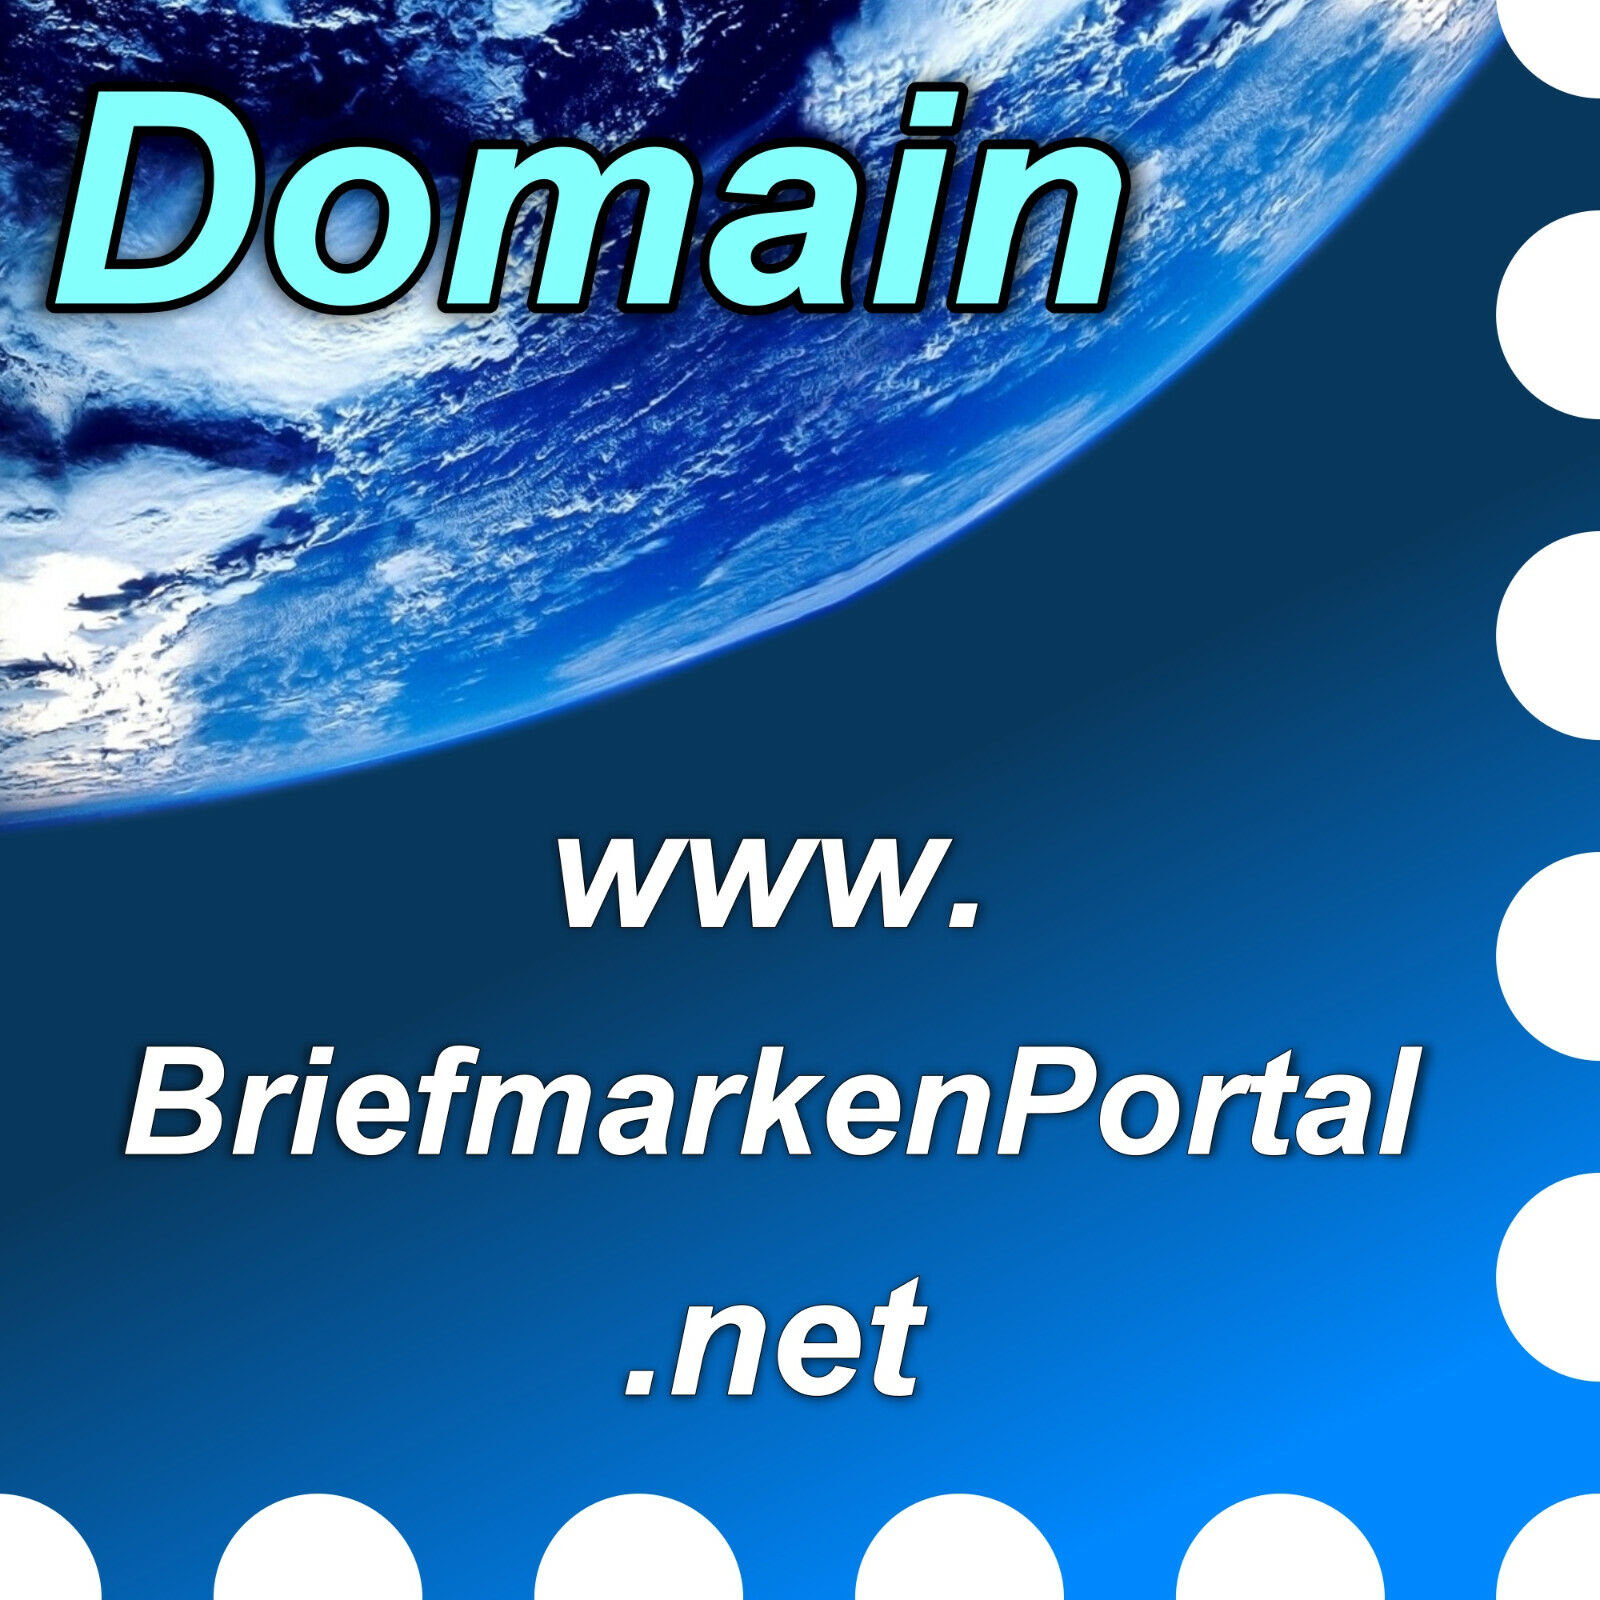 www.briefmarkenportal.net - Domena / Web, Adres internetowy / URL - Filatelis